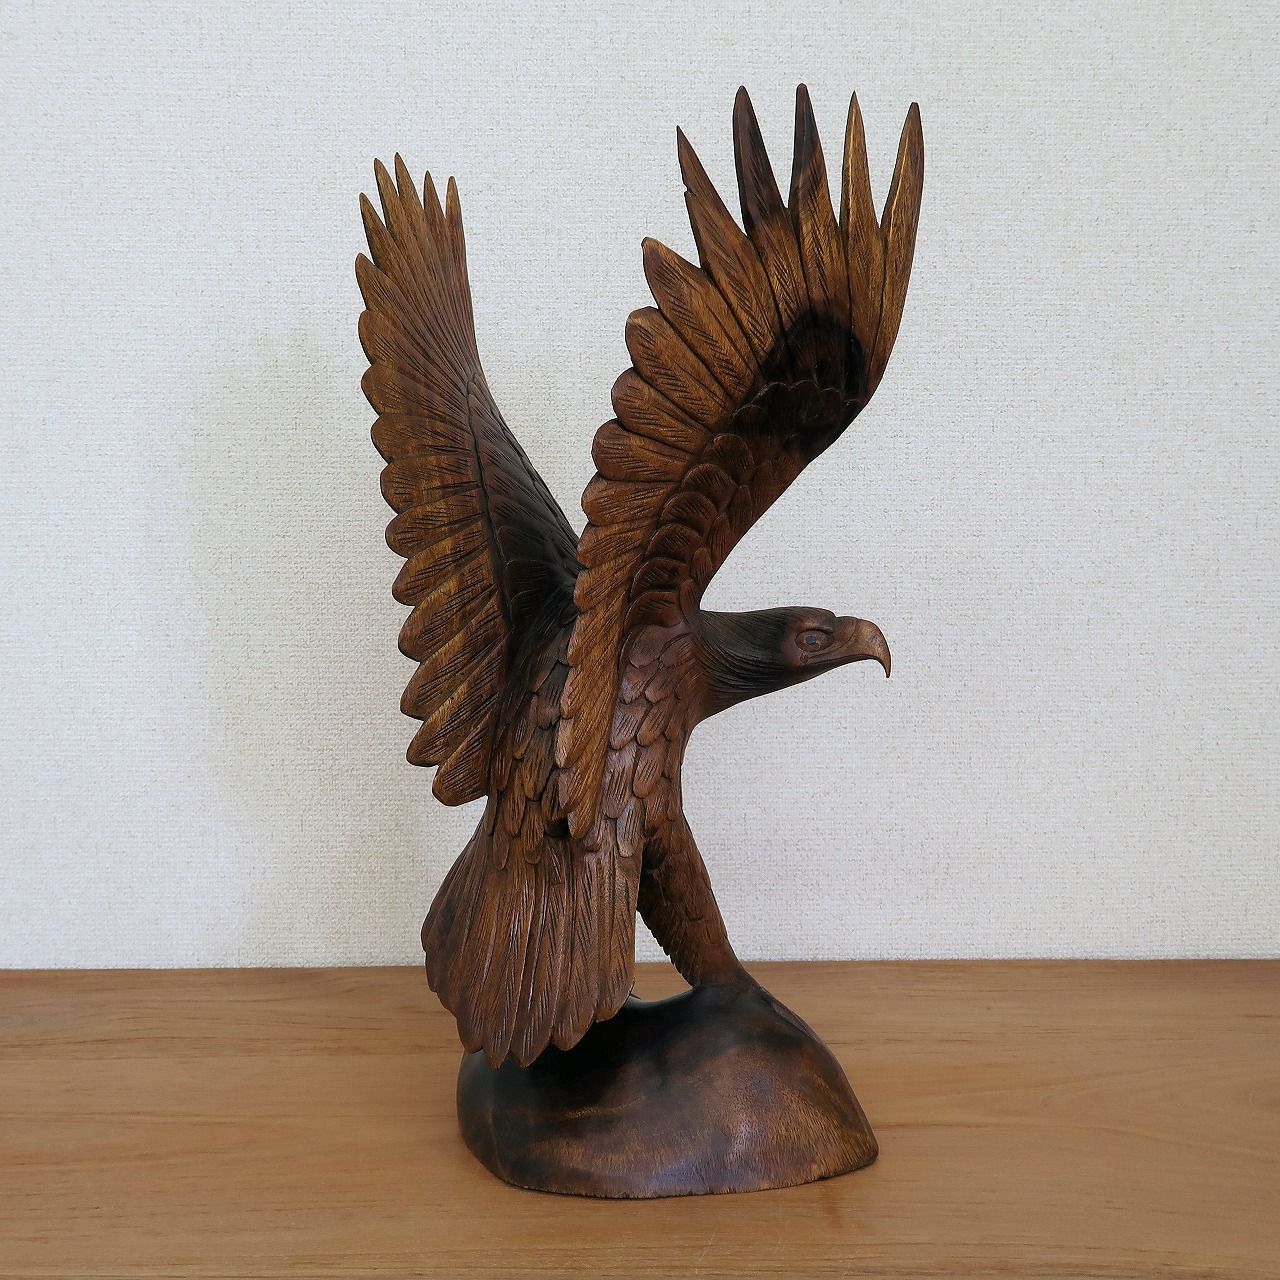 イーグルの木彫り50cm 右向き 鷲の木彫り置物 オブジェ オーナメント 